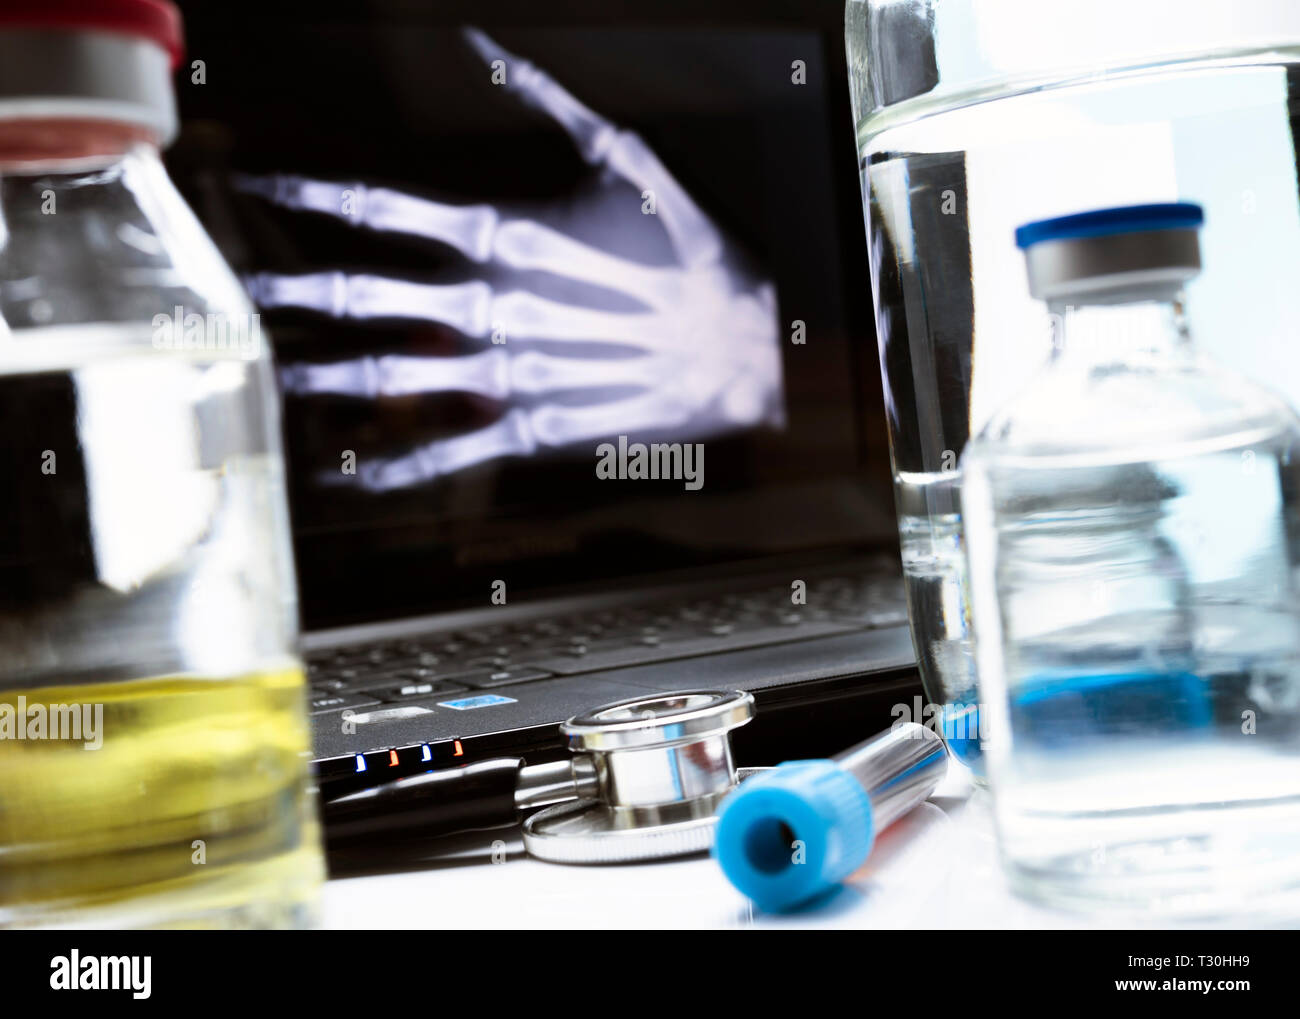 La radiografía de la mano en el hospital, imagen conceptual Foto de stock